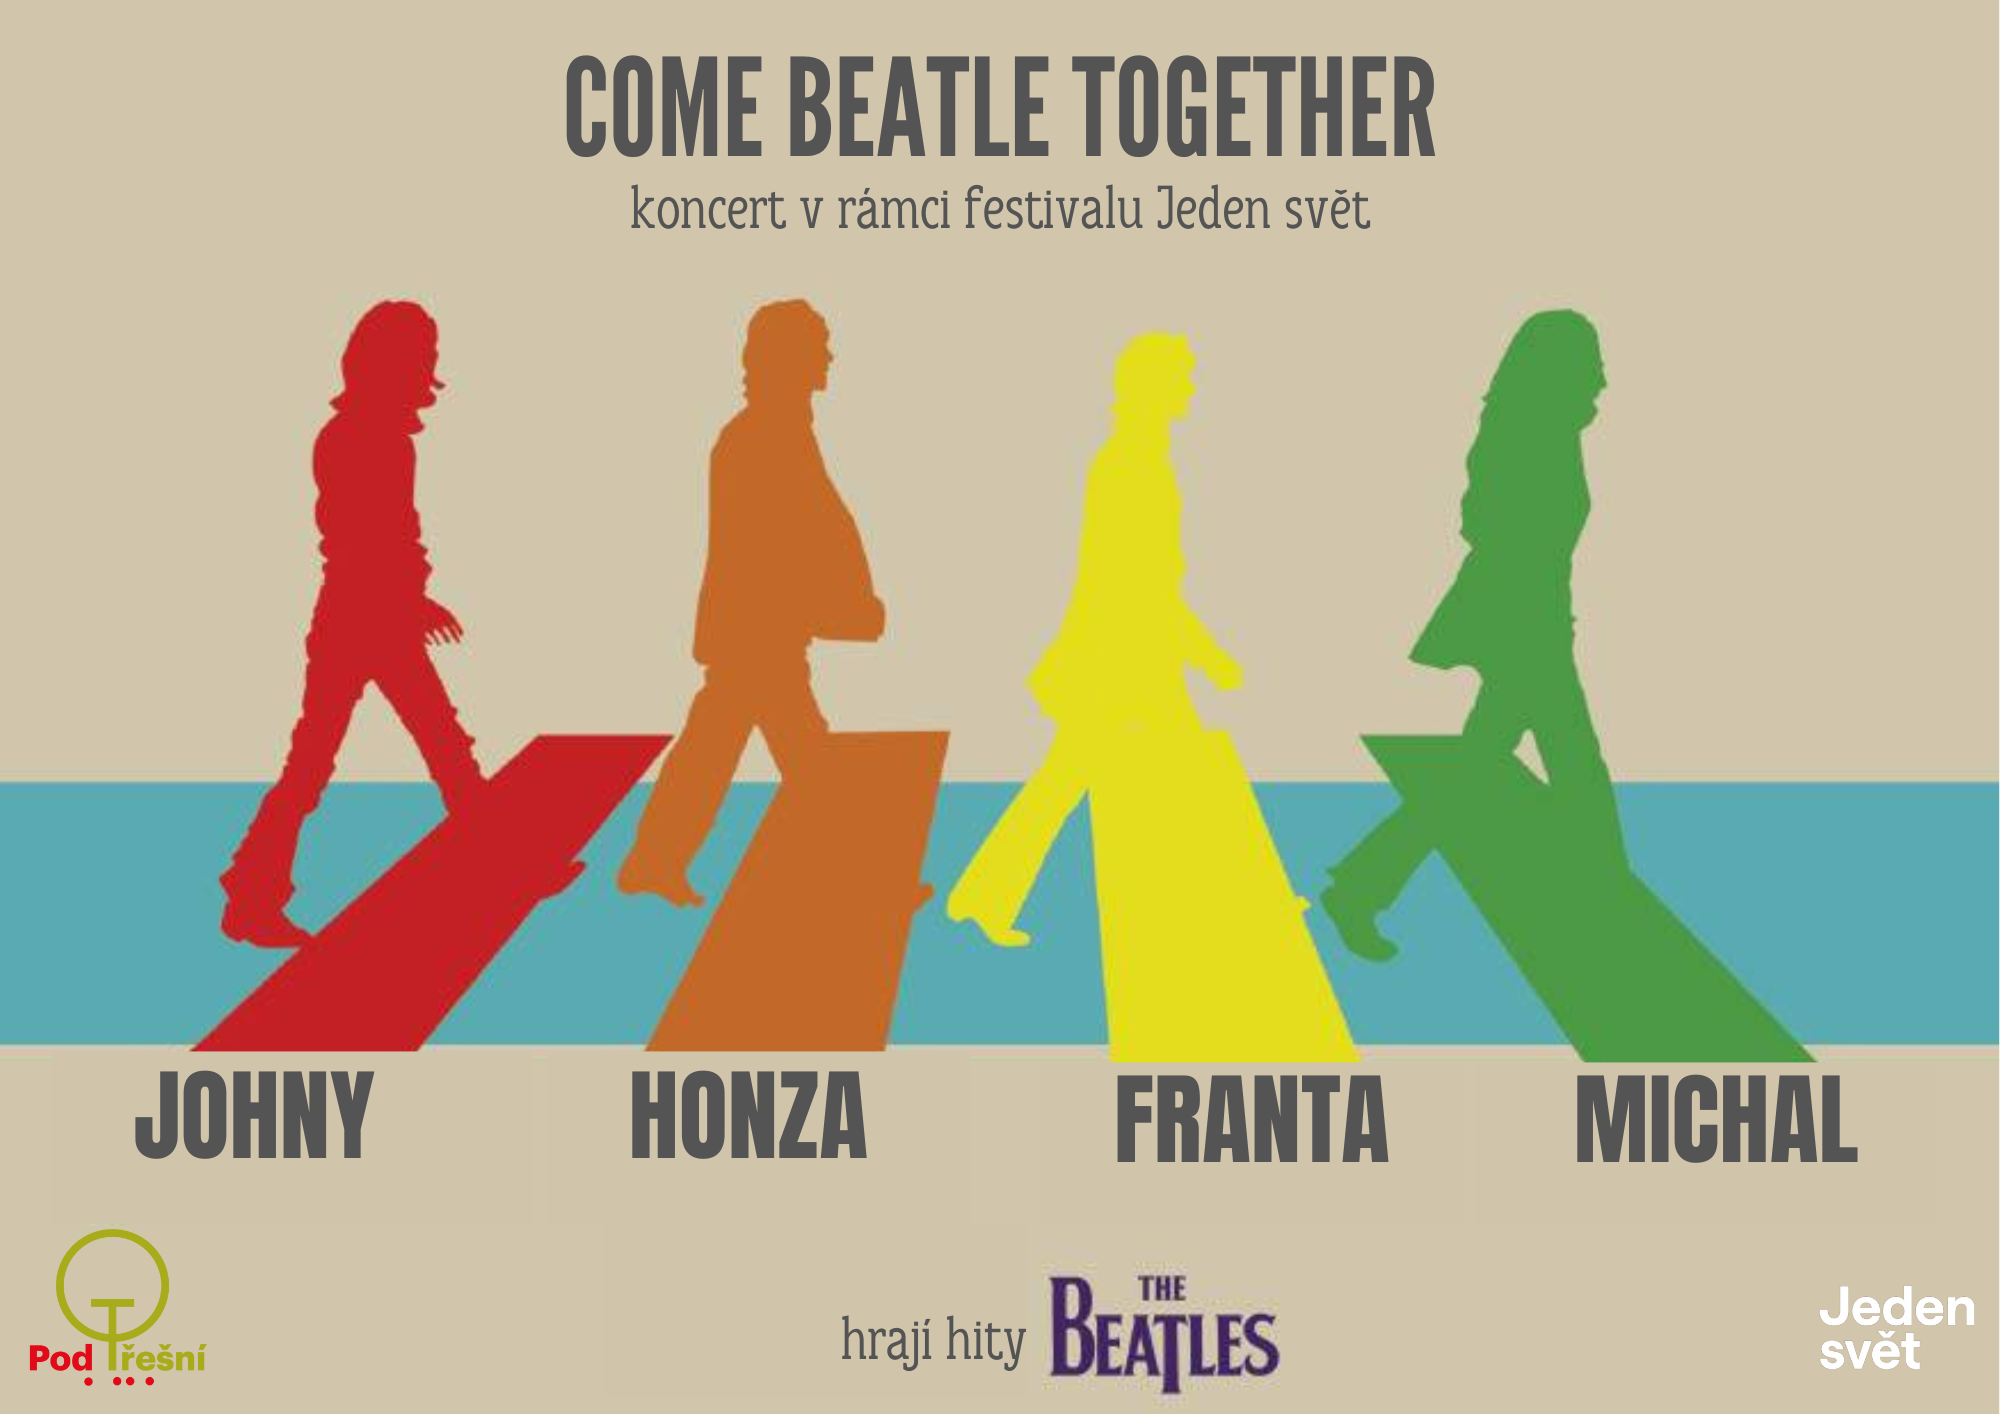 Pozvánka na ukončení festivalu, koncert kapely Come Beatle Together, čtyři siluety můžu jdou pro přechodu pro chodce.